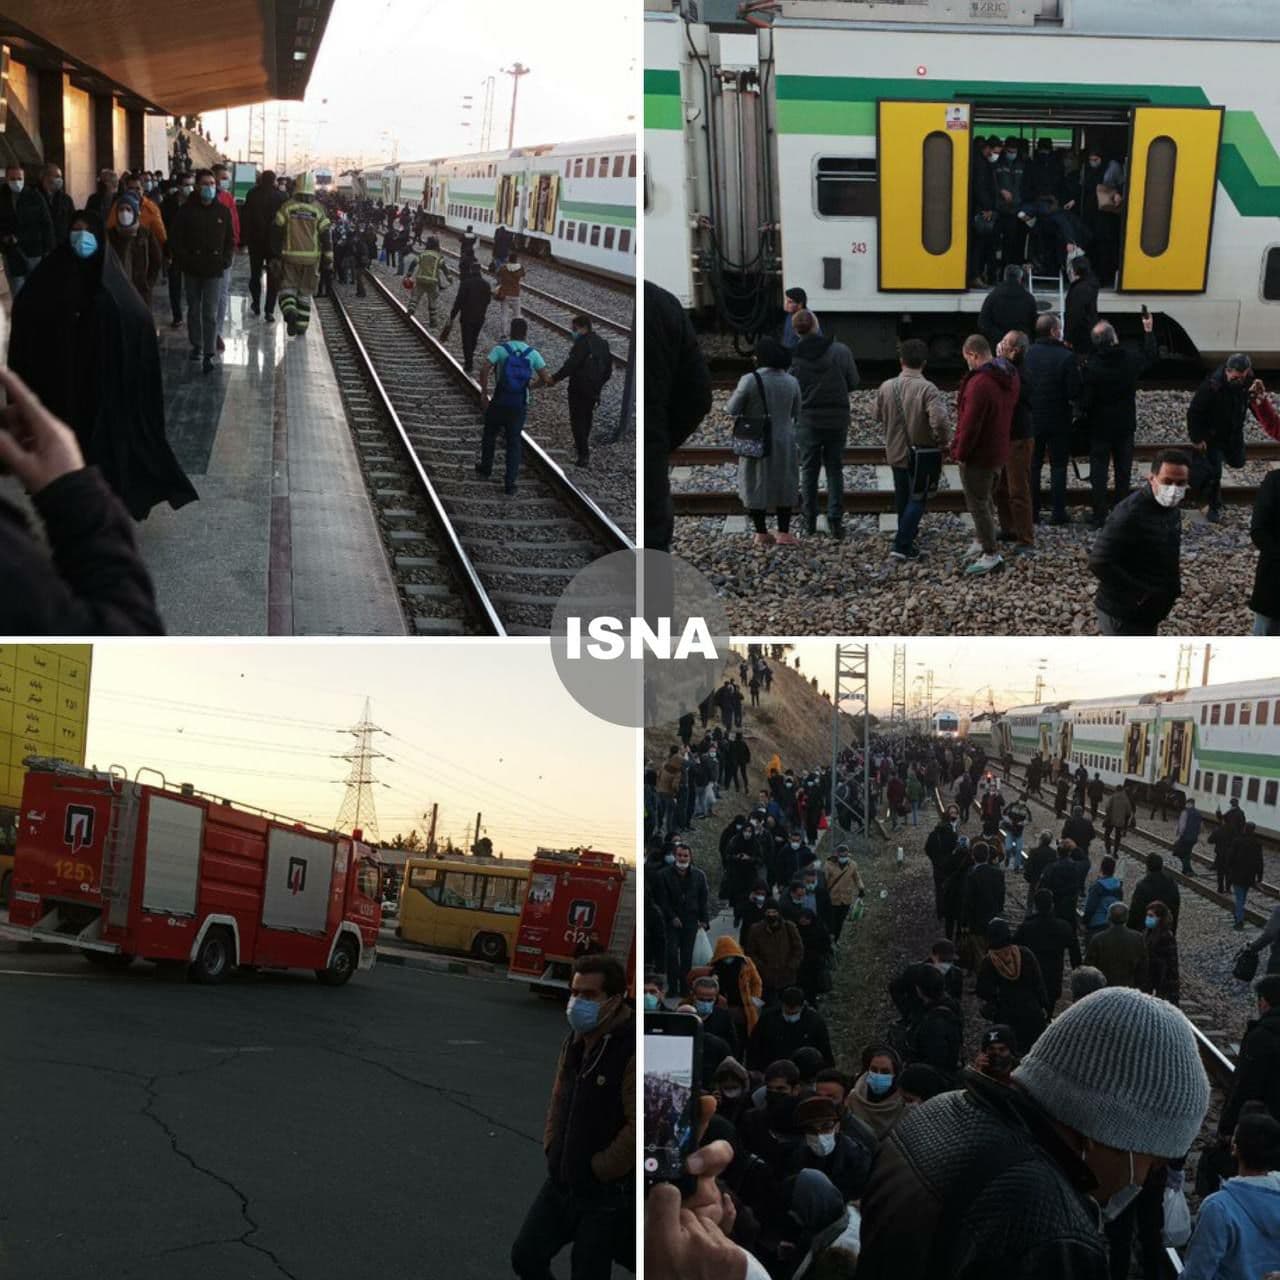 آخرین اخبار از حادثه متروی تهران - کرج | حال یک نفر وخیم است + فیلم و عکس